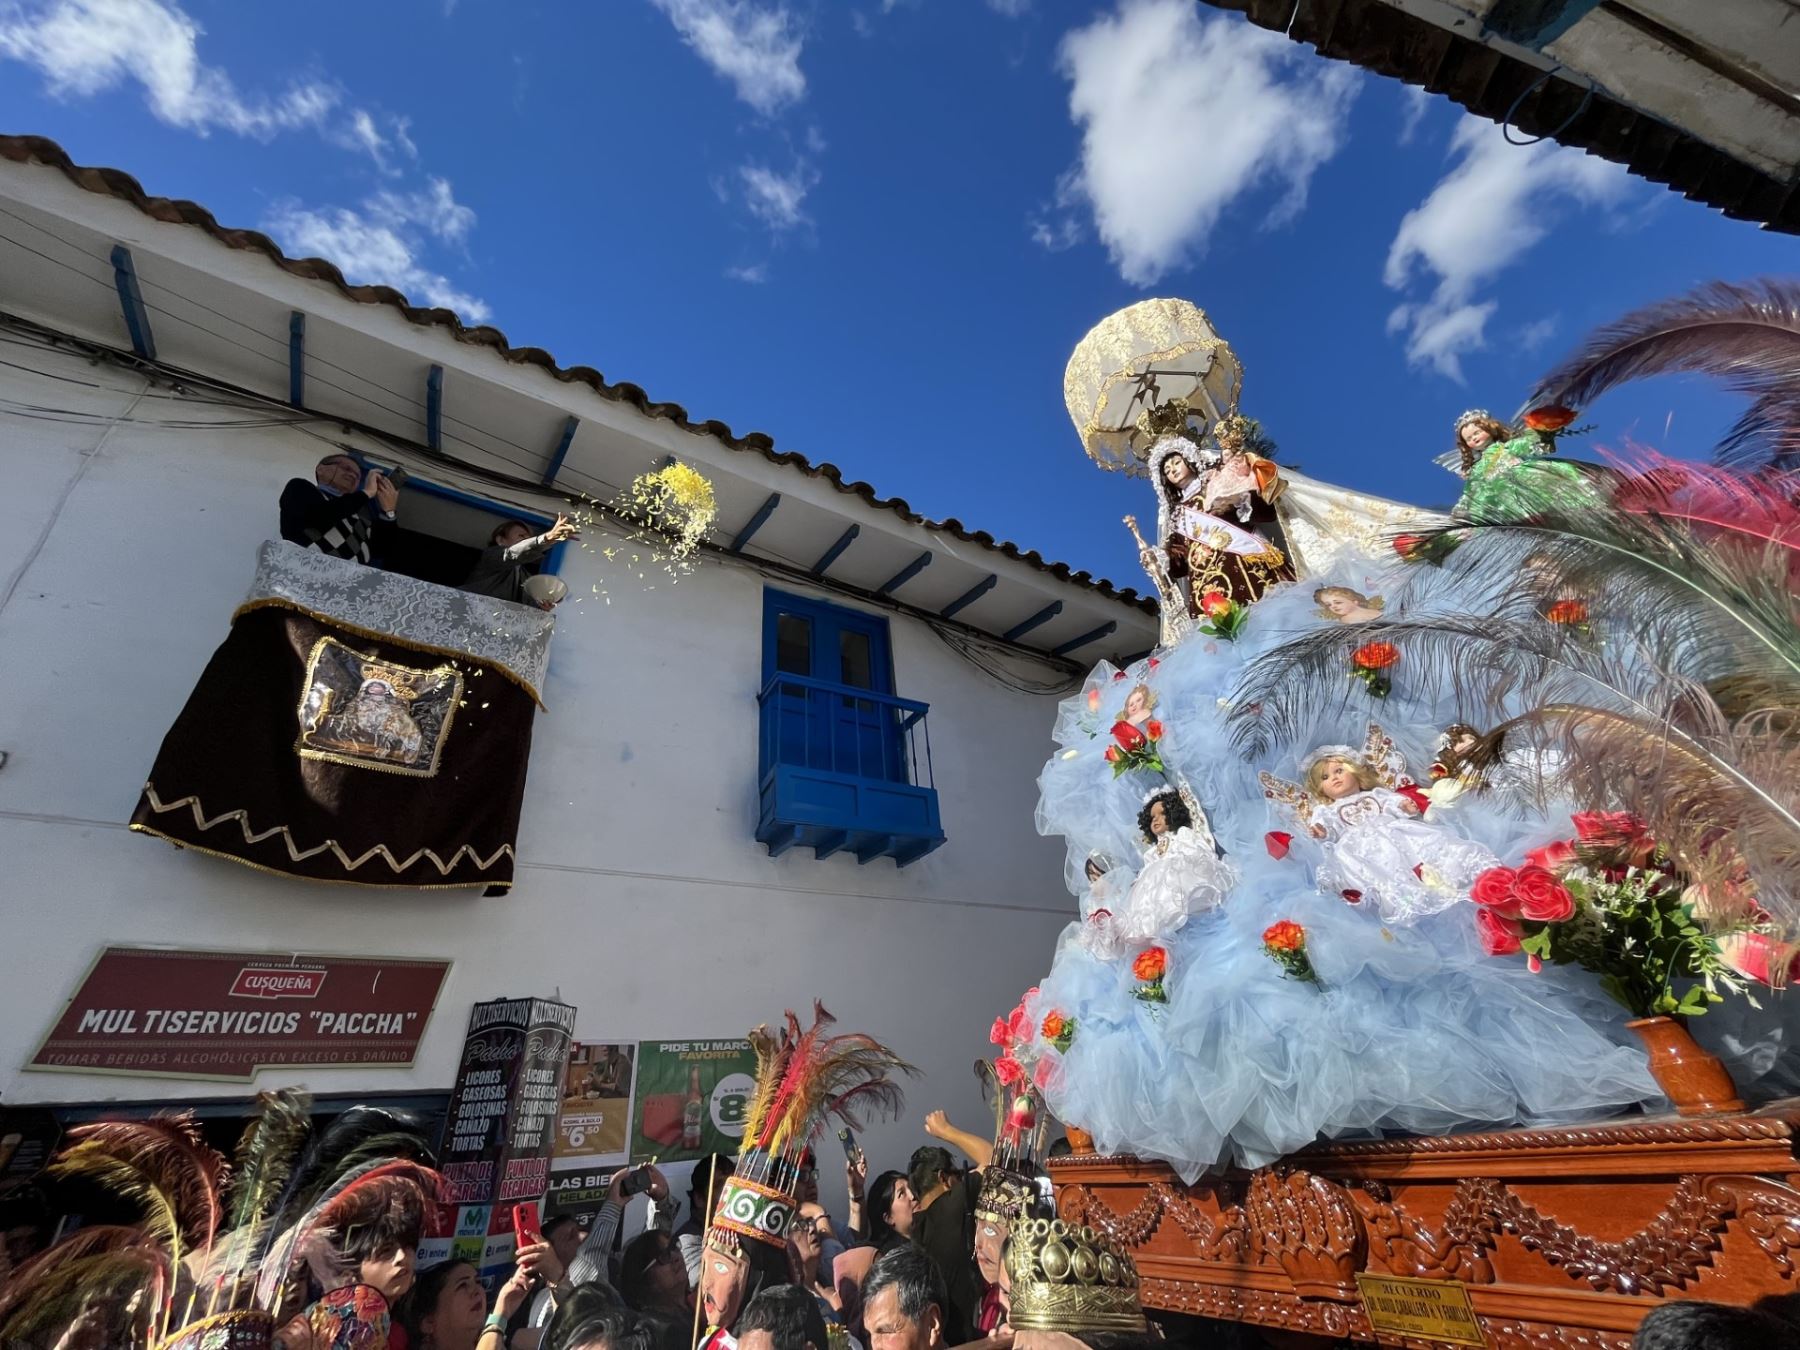 Conocido por su devoción y hermosa fiesta en honor a la Virgen del Carmen, Paucartambo, ubicado en Cusco, es uno de los cinco destinos peruanos reconocidos como los Mejores Pueblos Turísticos del Mundo 2023. ANDINA/Percy Hurtado Santillán